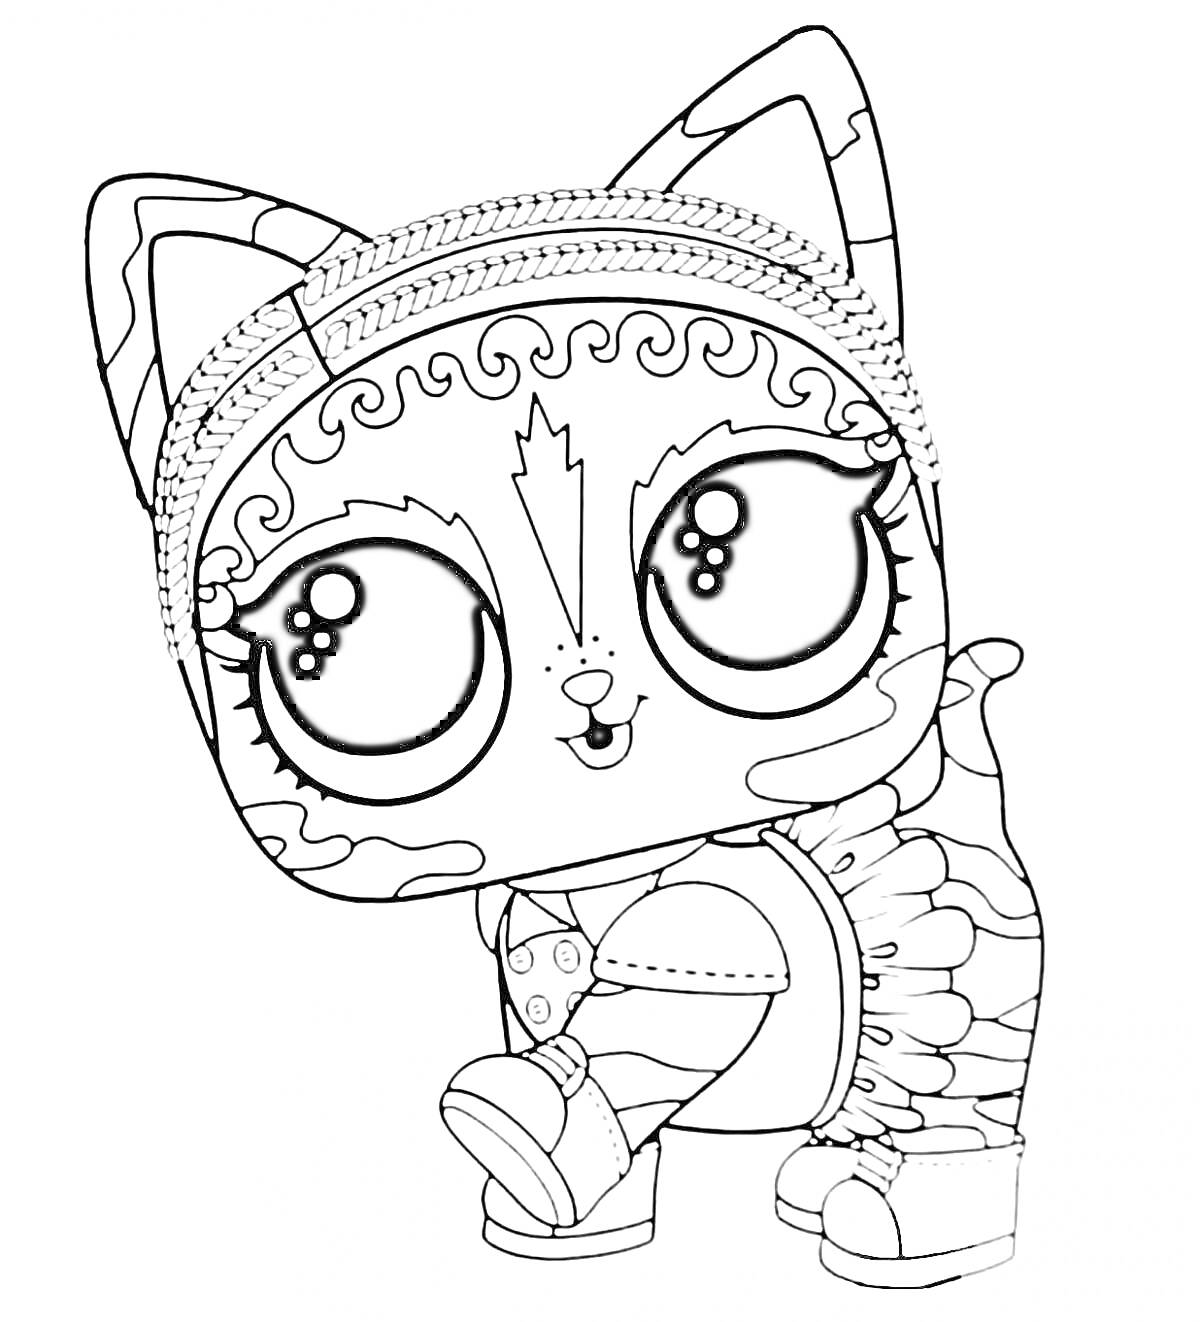 Раскраска Кошка с большими глазами, в рубашке и ботинках, с узорами на лбу и хвосте